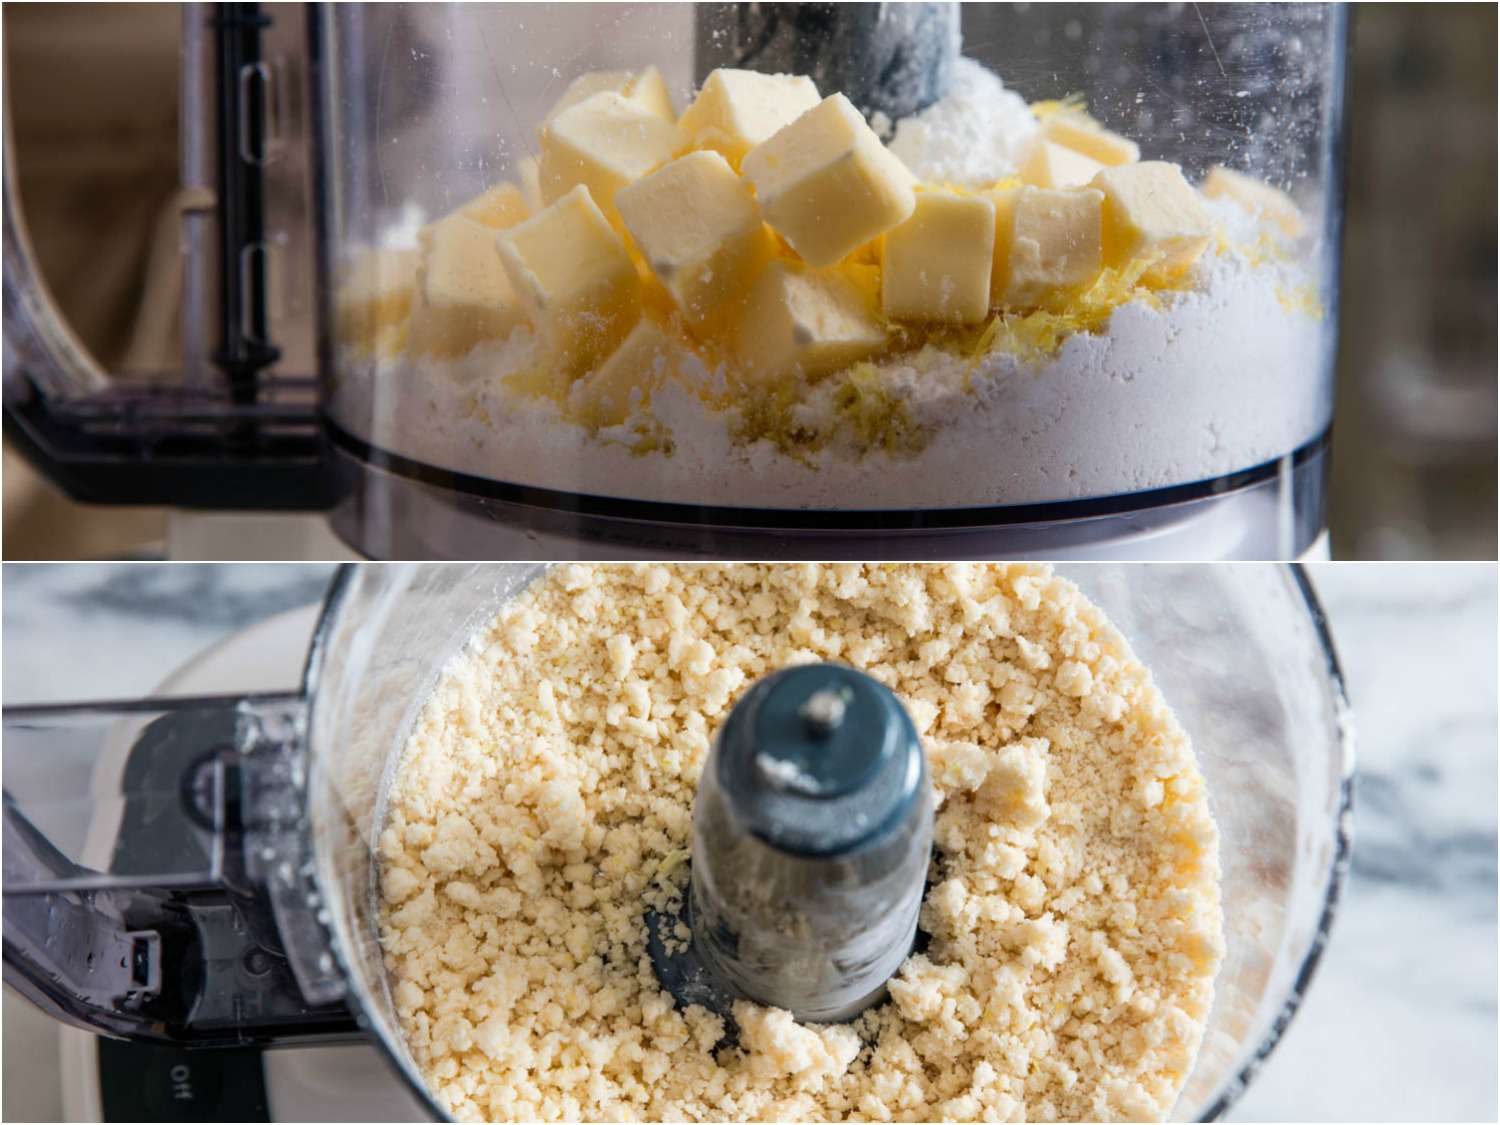 将黄油、糖和柠檬皮放在食品加工机中搅拌，制成柠檬棒皮。